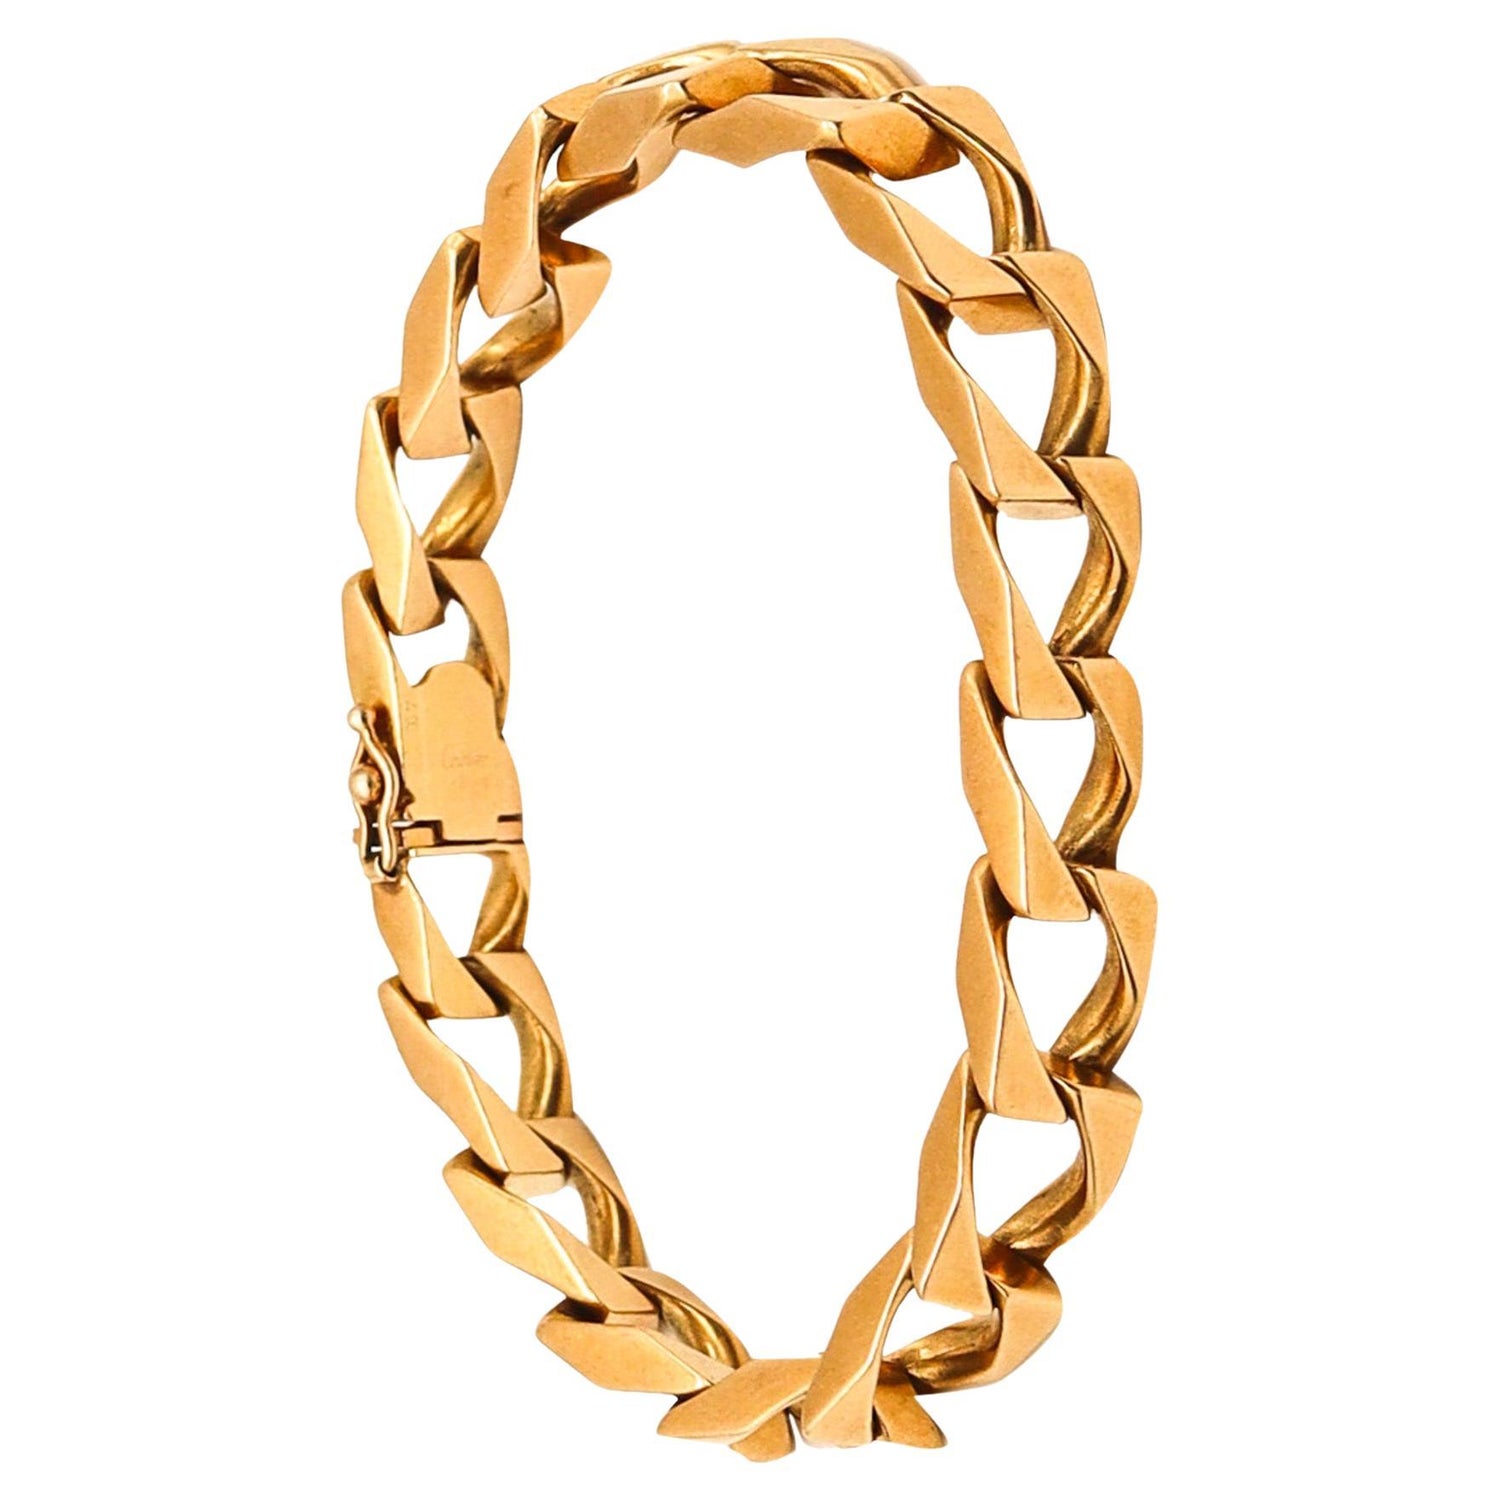 Fred Paris Bracelet, Vintage 18k Gold Coral, Bracelets